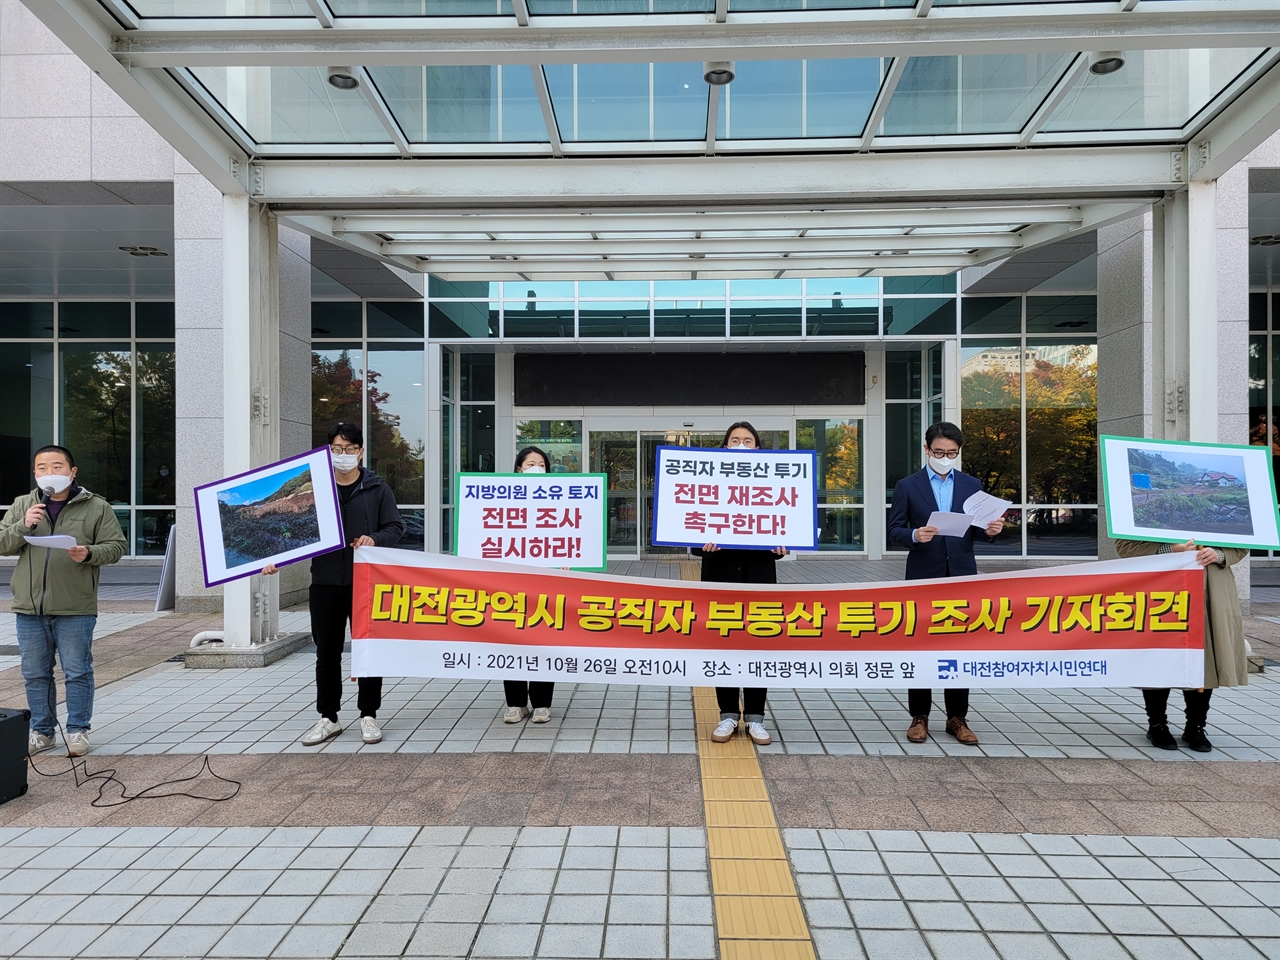 대전참여자치시민연대는 26일 오전 대전시의회 앞에서 기자회견을 열어 '대전광역시 공직자 부동산 투기 시민조사팀'의 조사 결과를 발표했다.